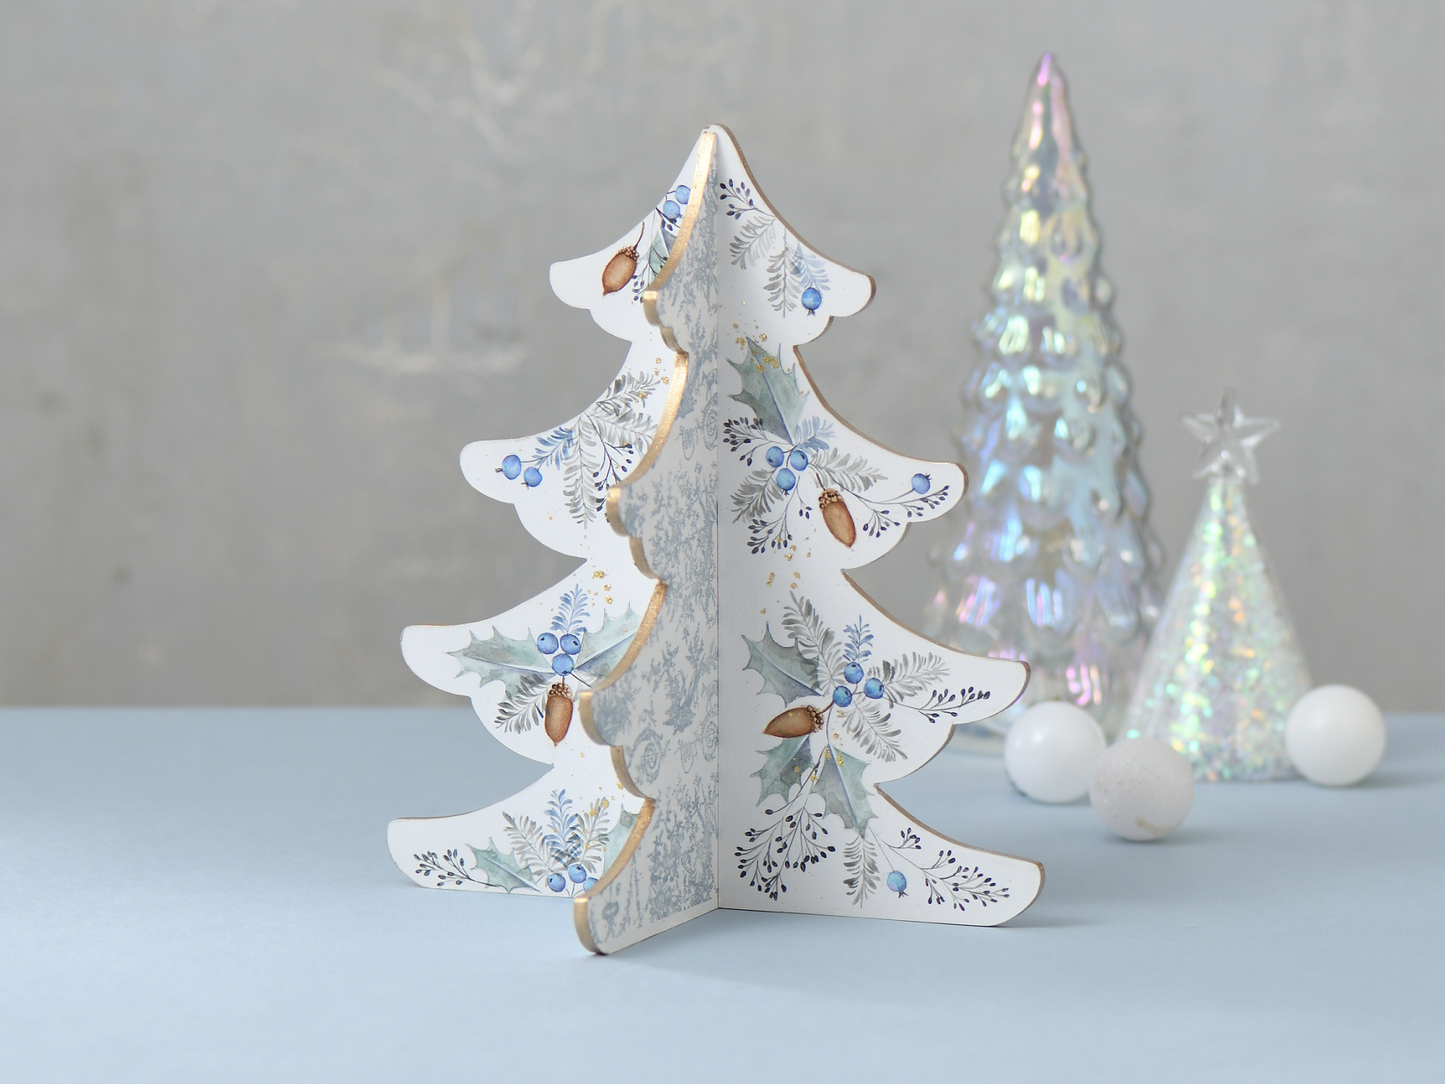 Crafting 川島詠子の 水彩画風のにじみを楽しむ ヒイラギとドングリのクリスマスツリー を描く